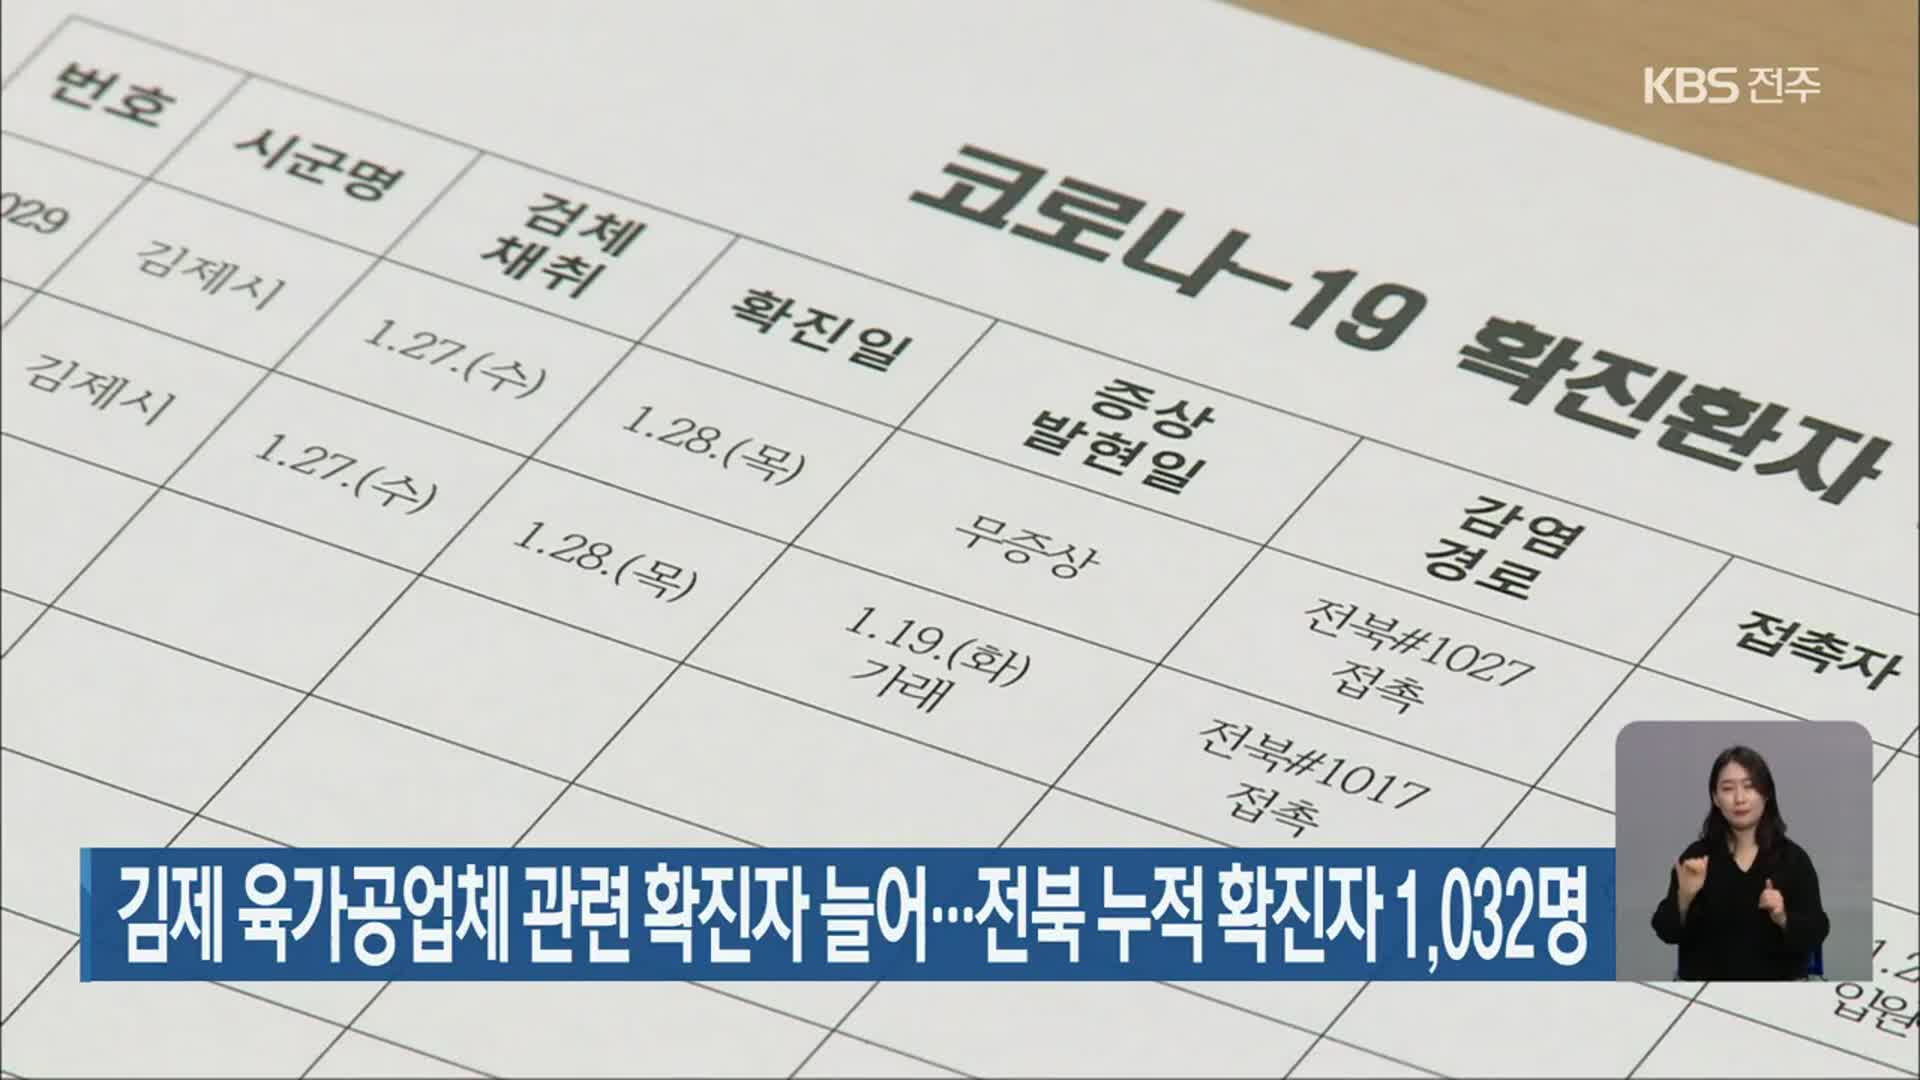 김제 육가공업체 관련 확진자 늘어…전북 누적 확진자 1,032명